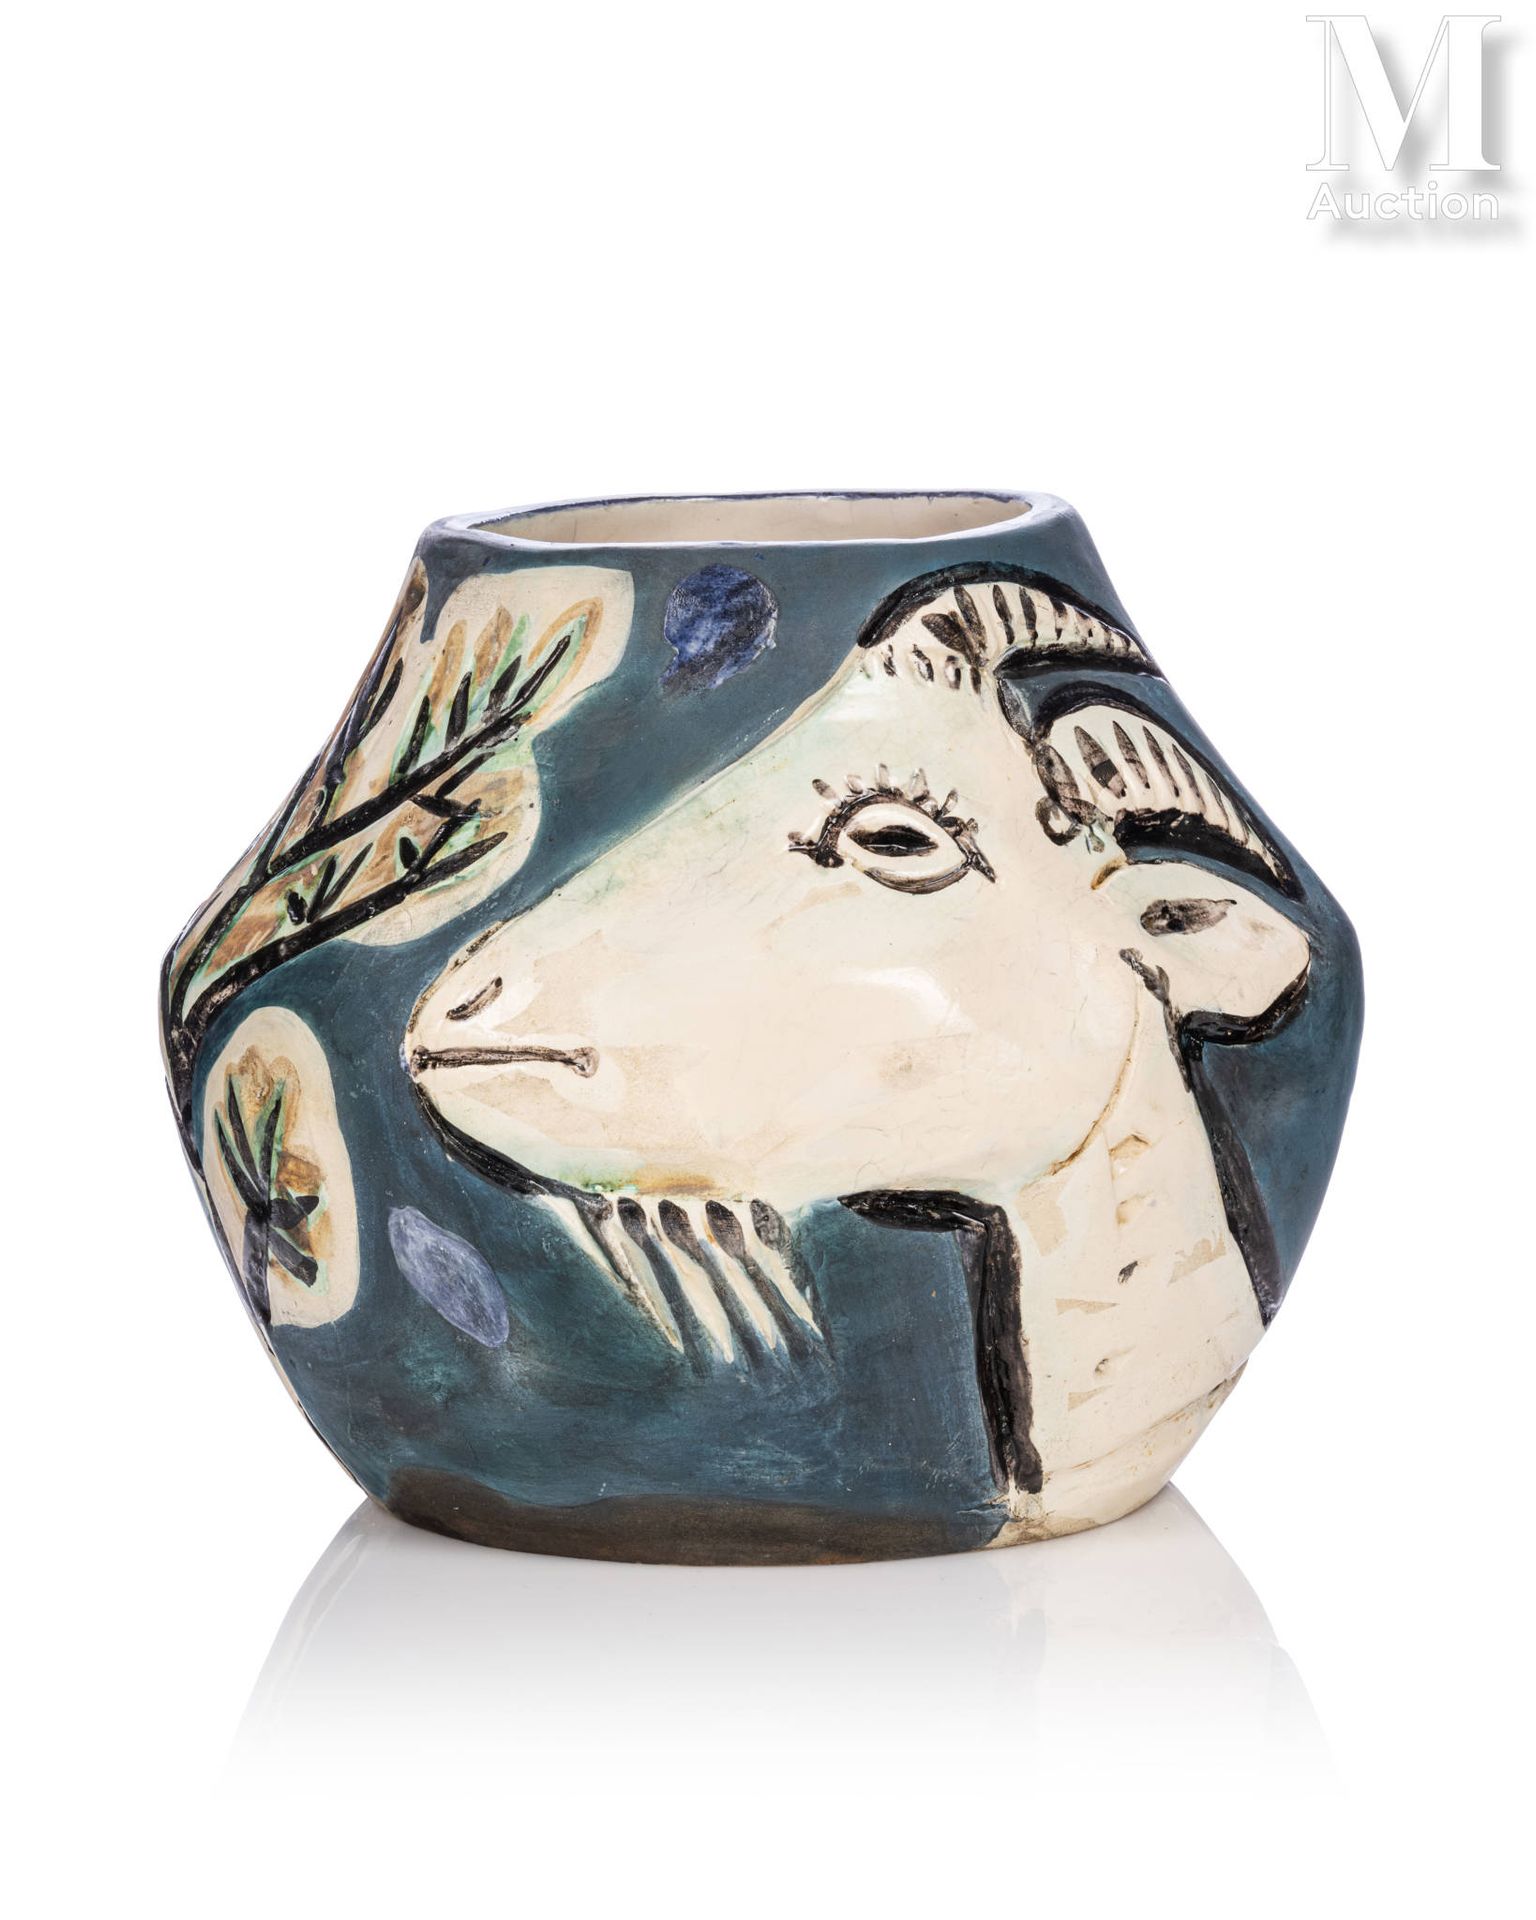 Pablo PICASSO (1881-1973) Vase aux chèvres

Vase bas à pans coupés en terre de f&hellip;